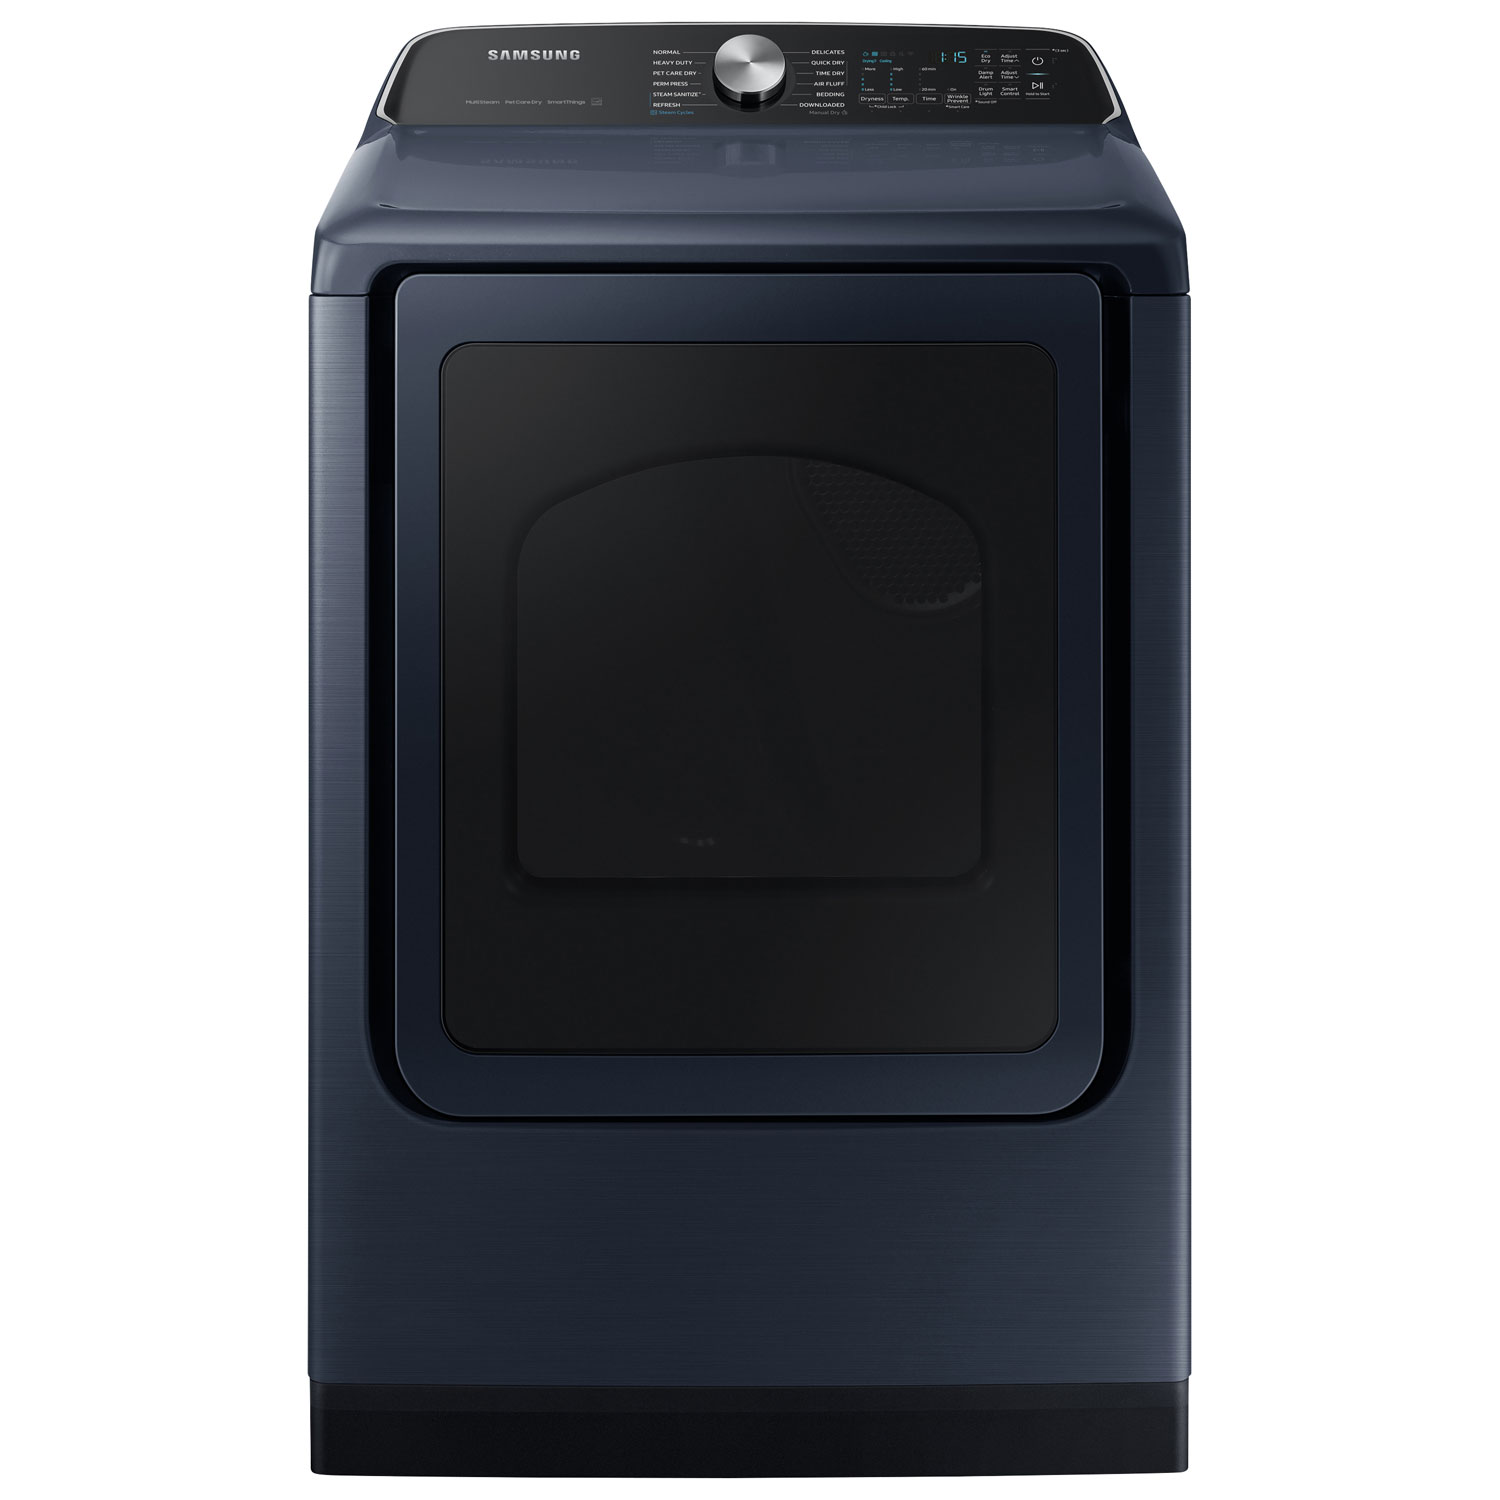 Samsung 7.4 Cu. Ft. Electric Steam Dryer (DVE54CG7155DAC) - Navy